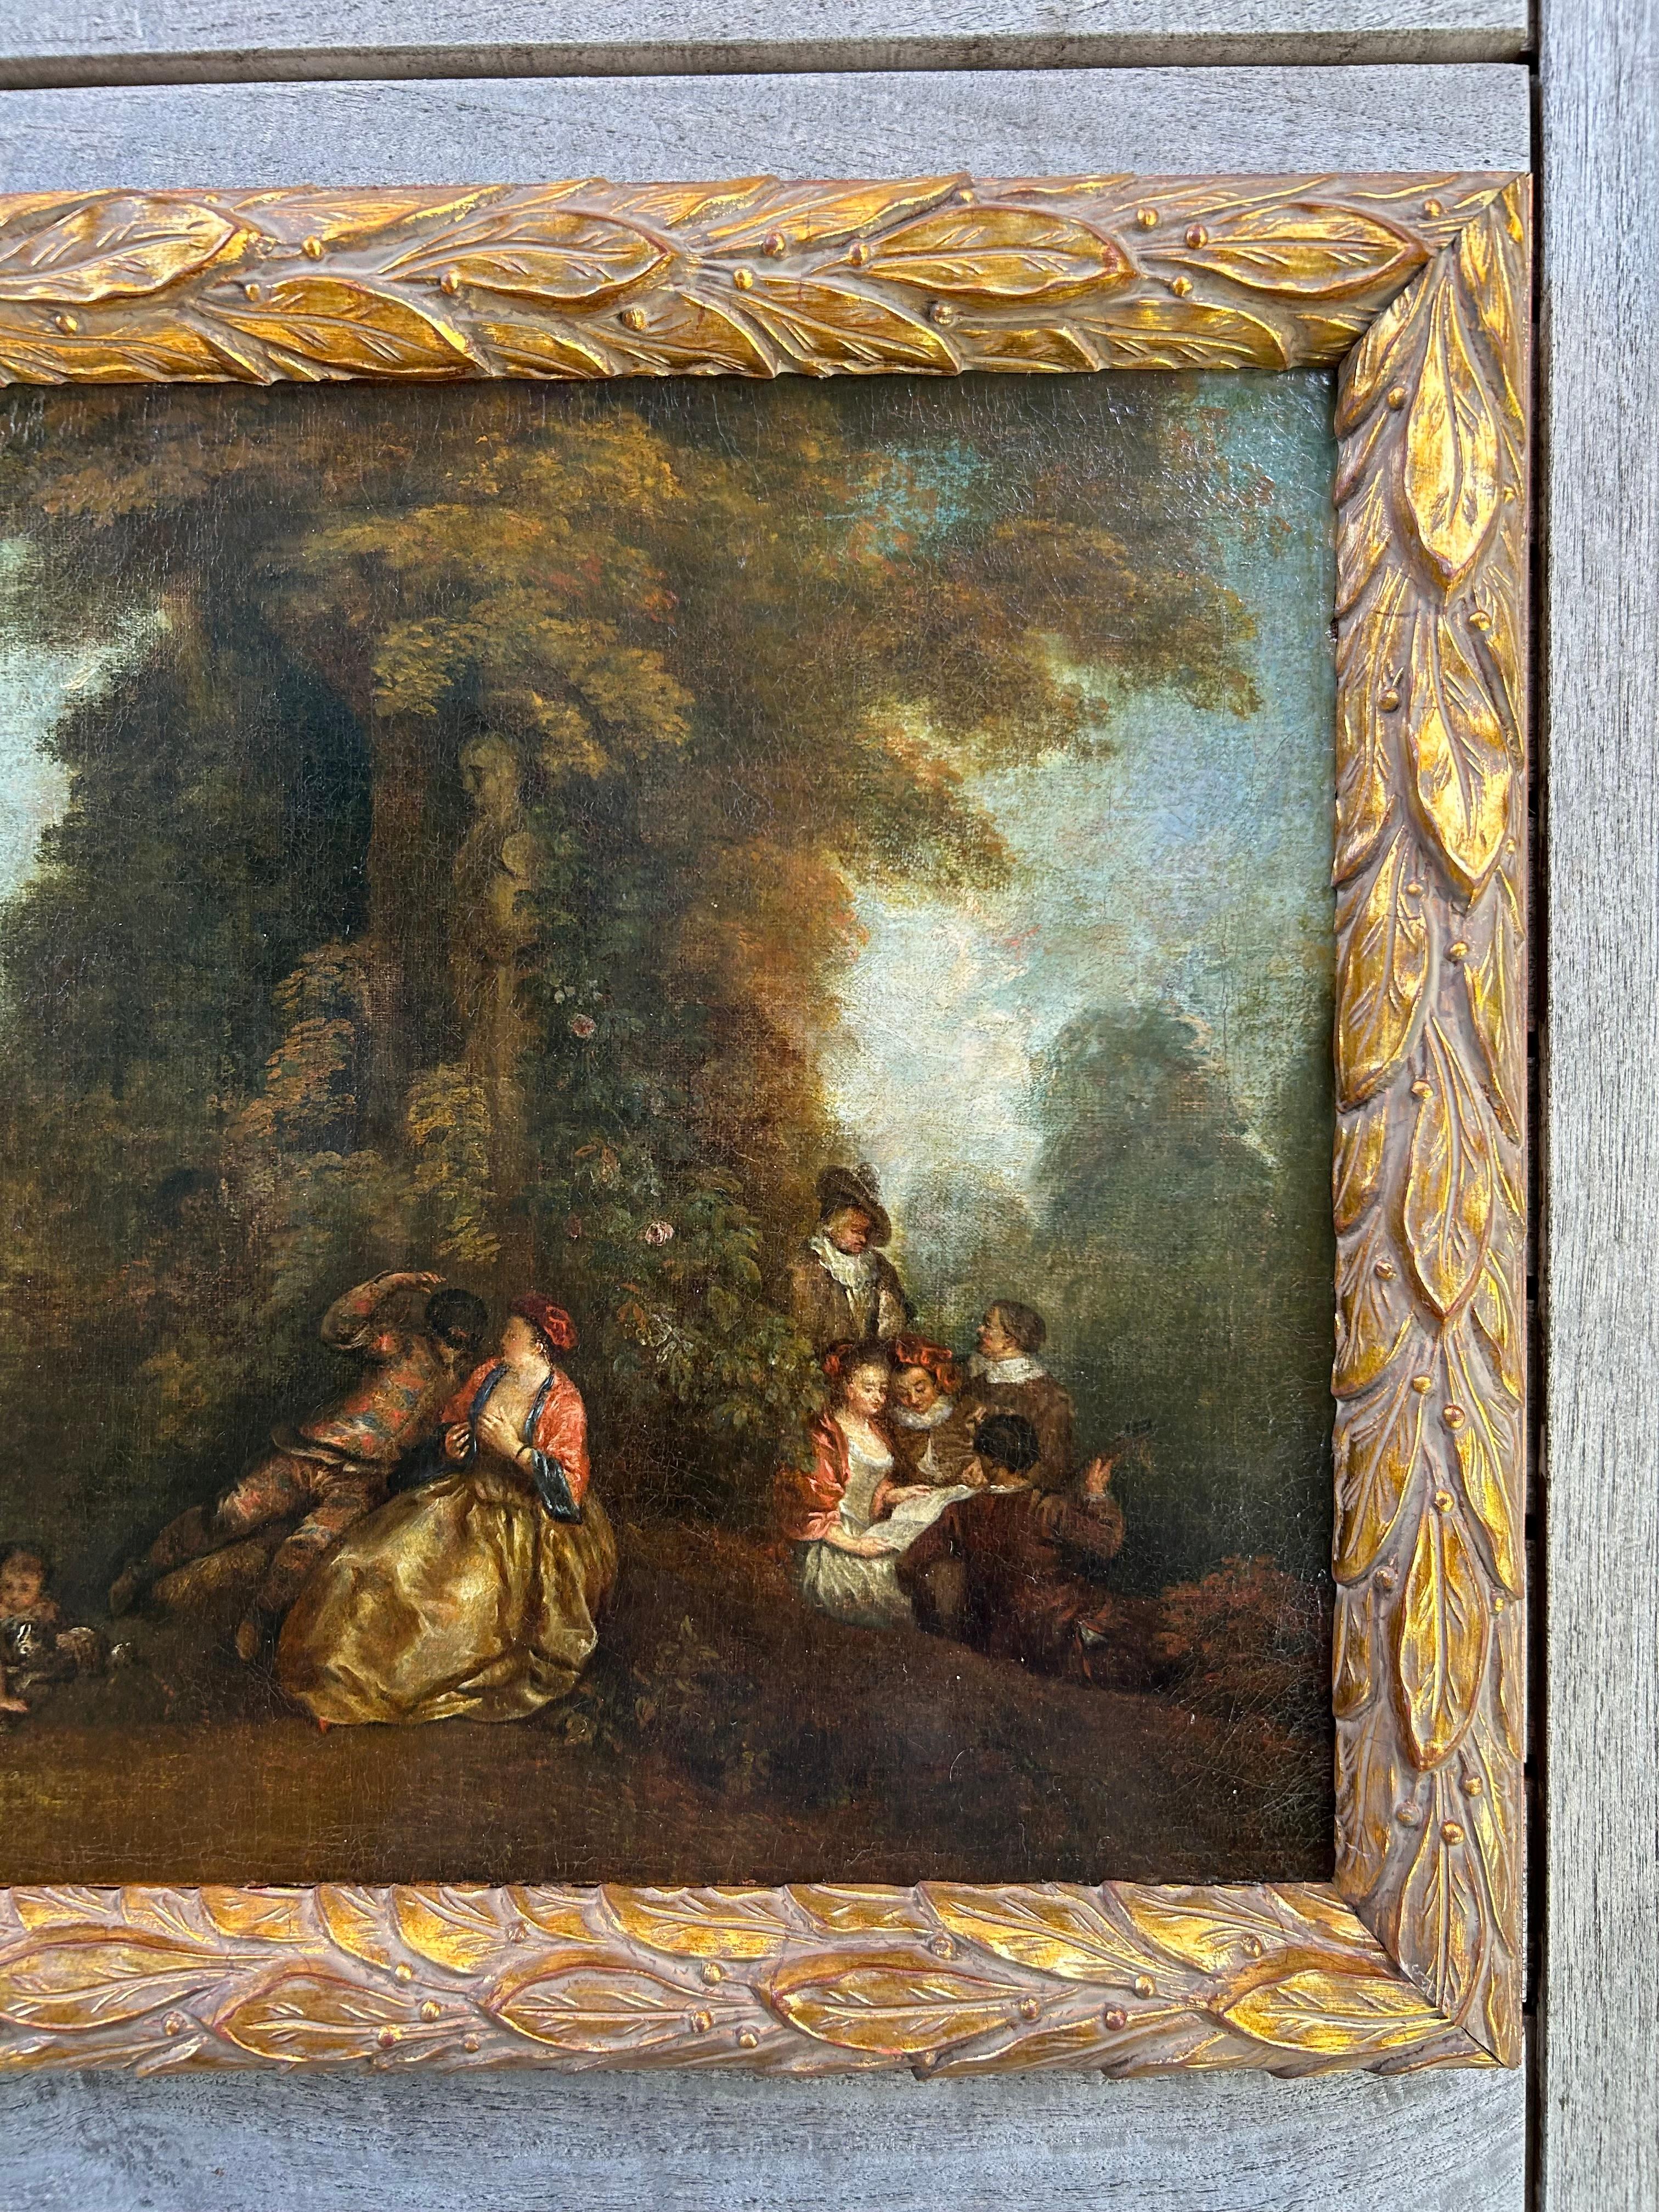 Ein schönes Öl auf Leinwand aus dem 18. Jahrhundert, das eine für die damalige Zeit typische Gartenszene oder 